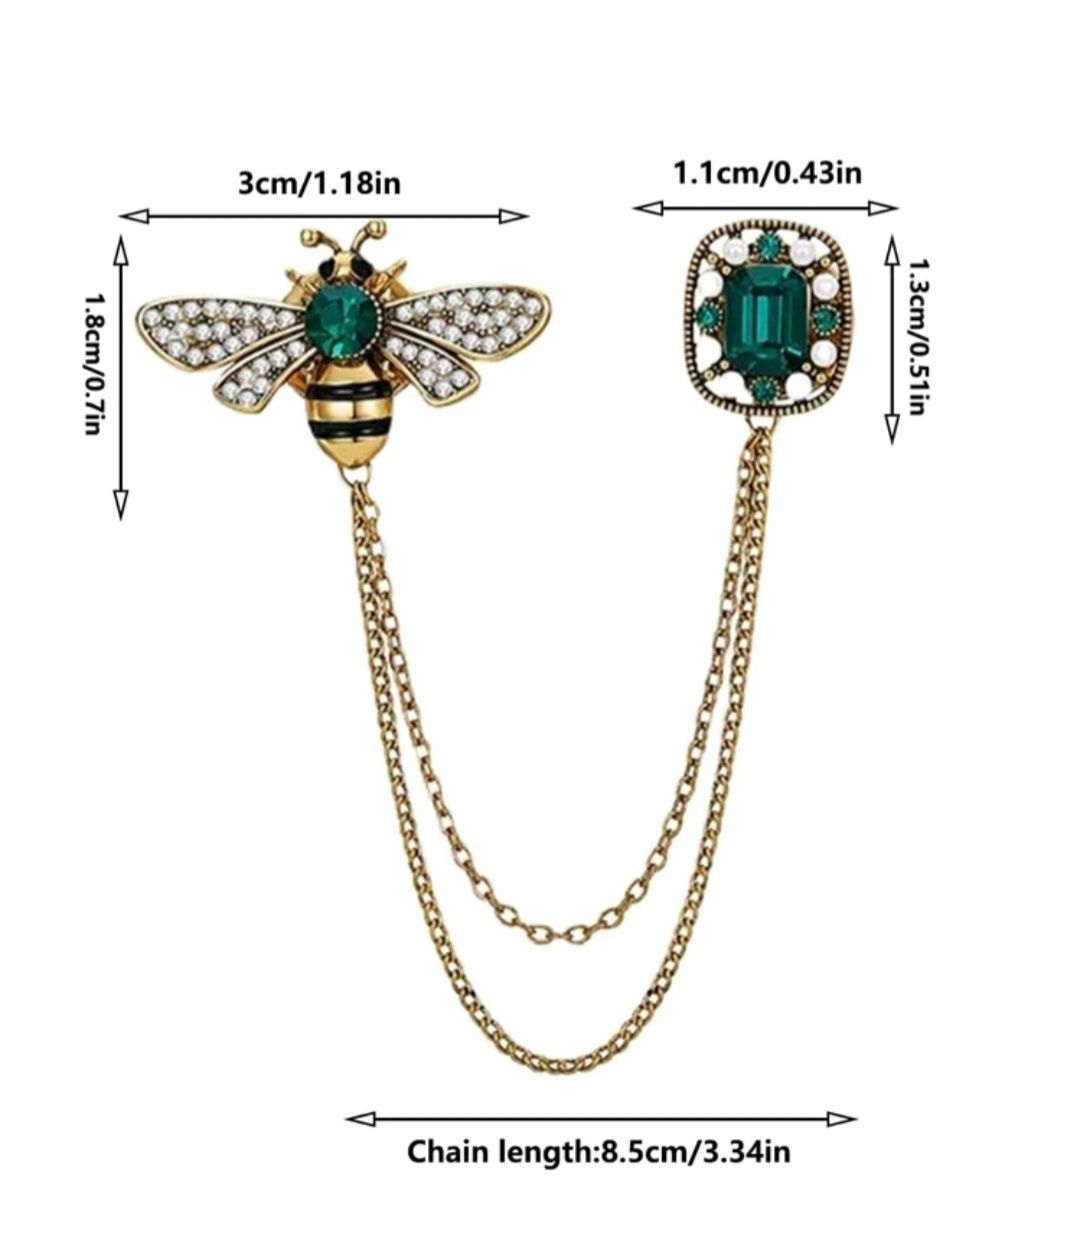 Broszka przypinka pszczółka z kryształkiem i łańcuszkiem